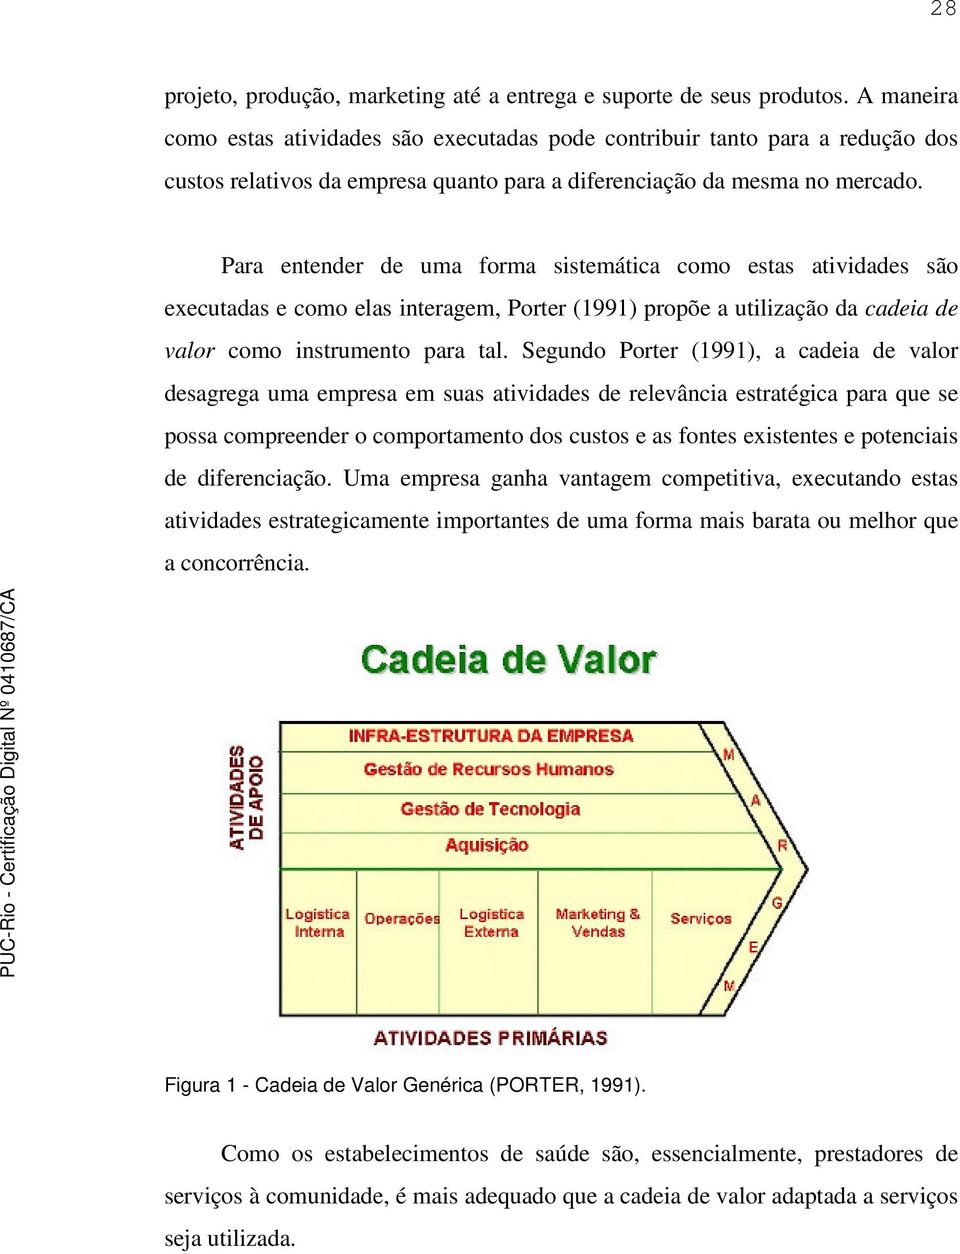 Para entender de uma forma sistemática como estas atividades são executadas e como elas interagem, Porter (1991) propõe a utilização da cadeia de valor como instrumento para tal.